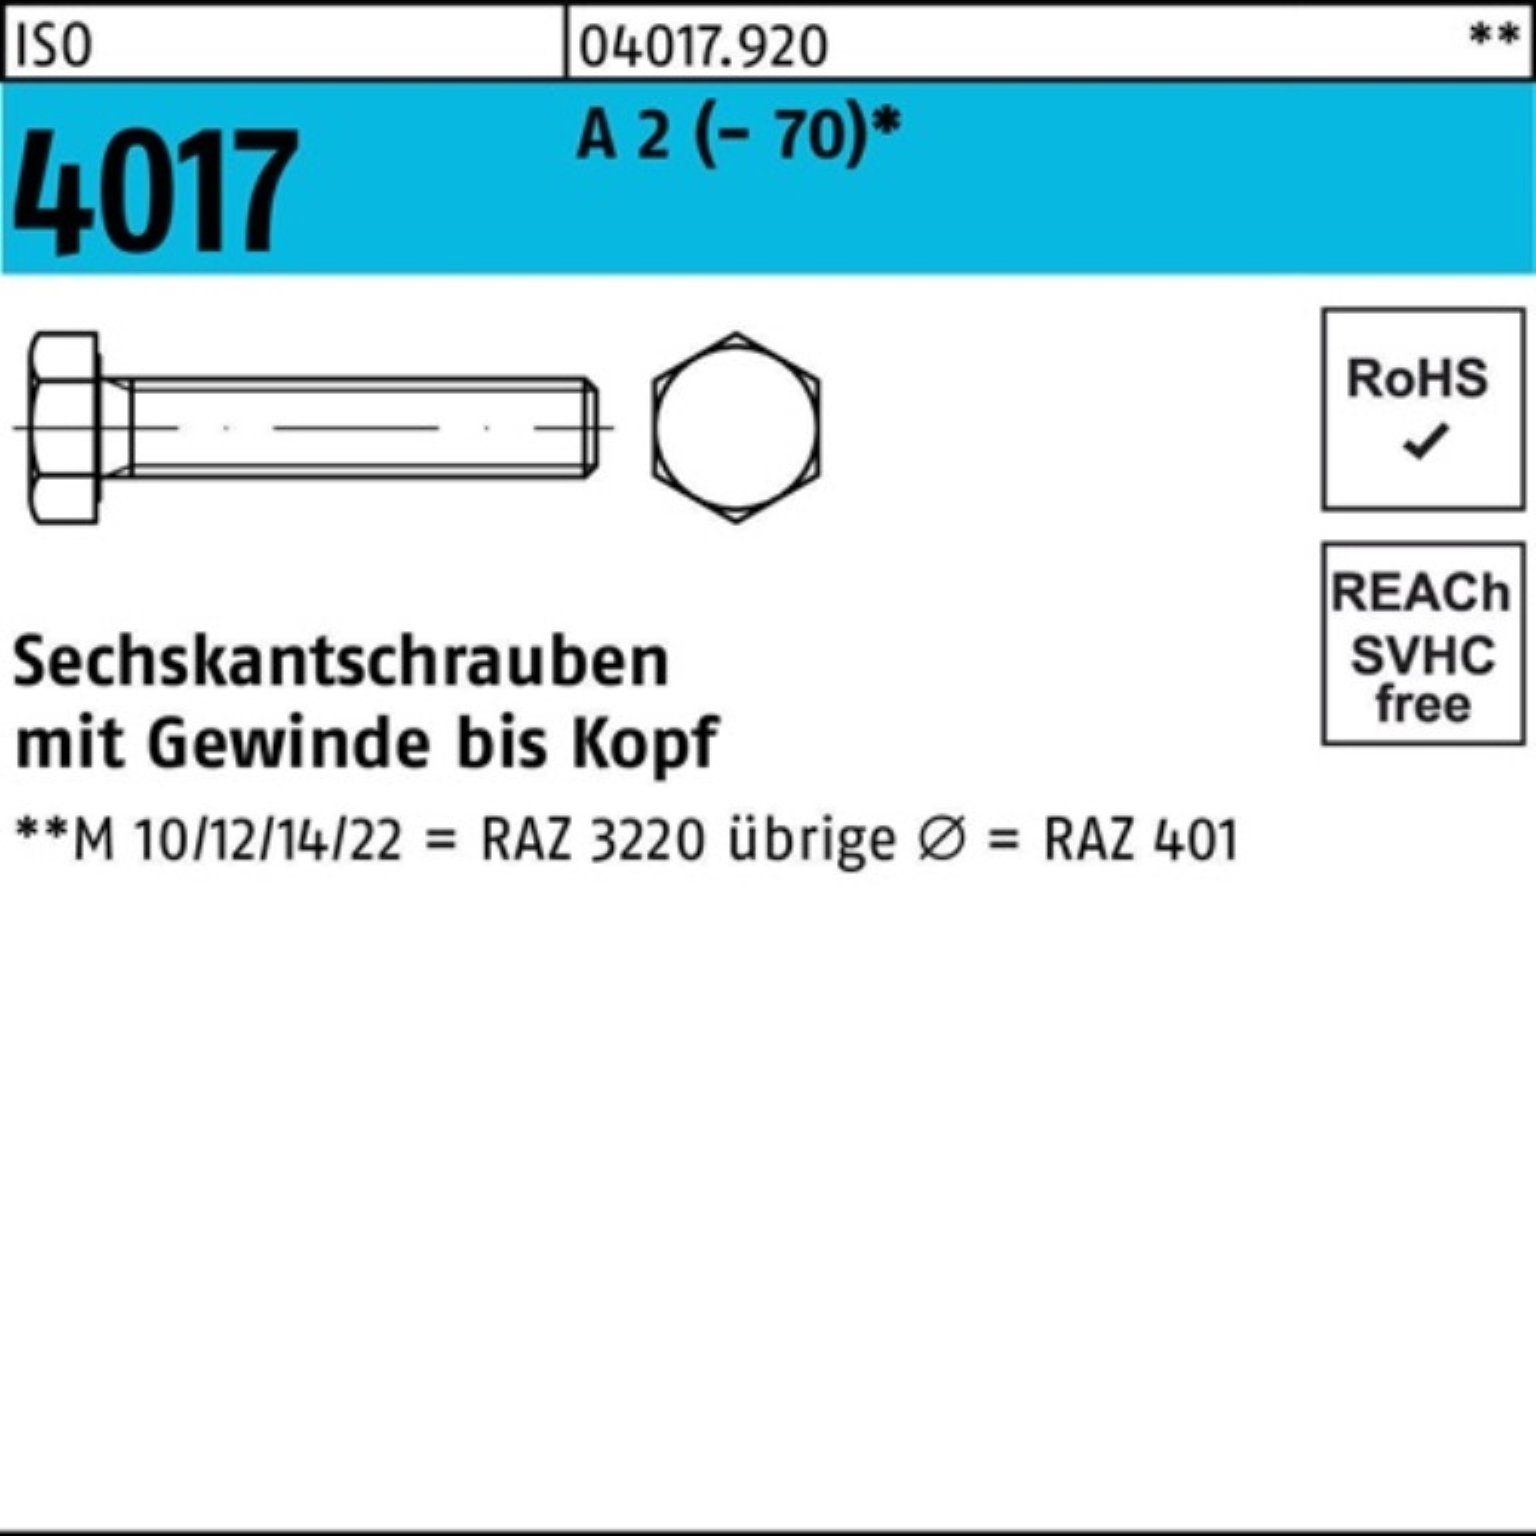 Bufab Sechskantschraube 100er Pack Sechskantschraube ISO 4017 VG M6x 35 A 2 (70) 100 Stück | Schrauben